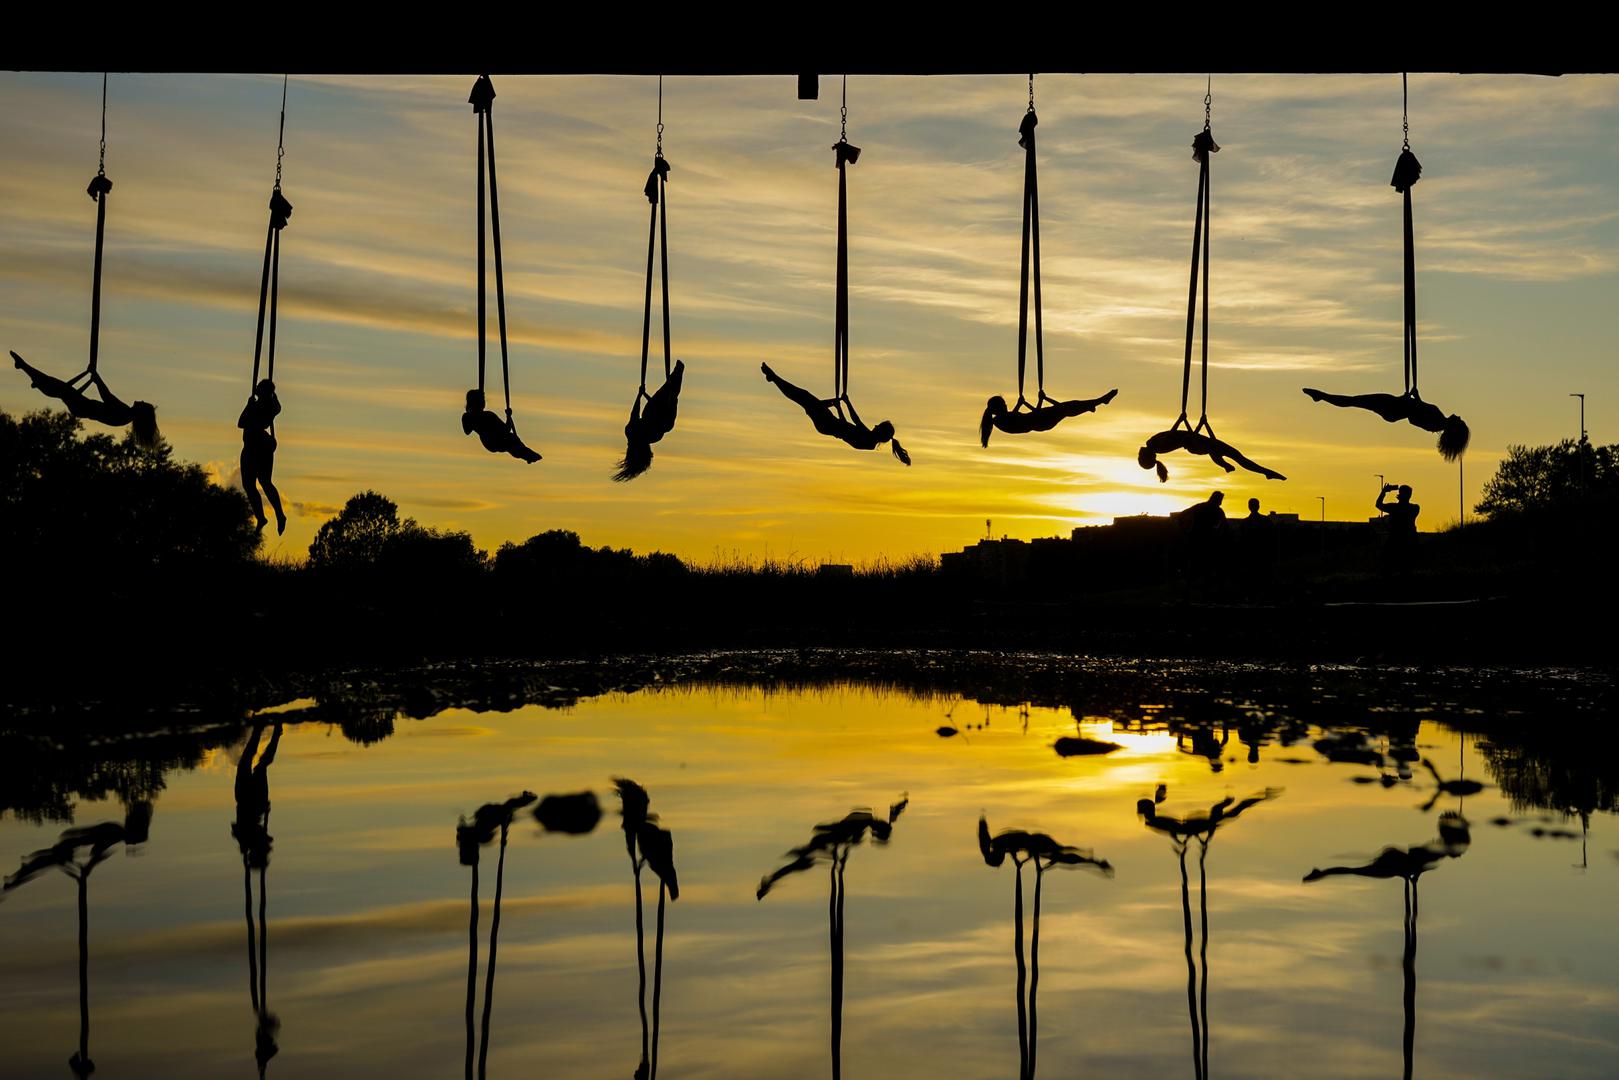 Viseći s mosta Mladosti, članice Triko Cirkus Studia izvode ples Aerial hammocka tijekom zalaska sunca.